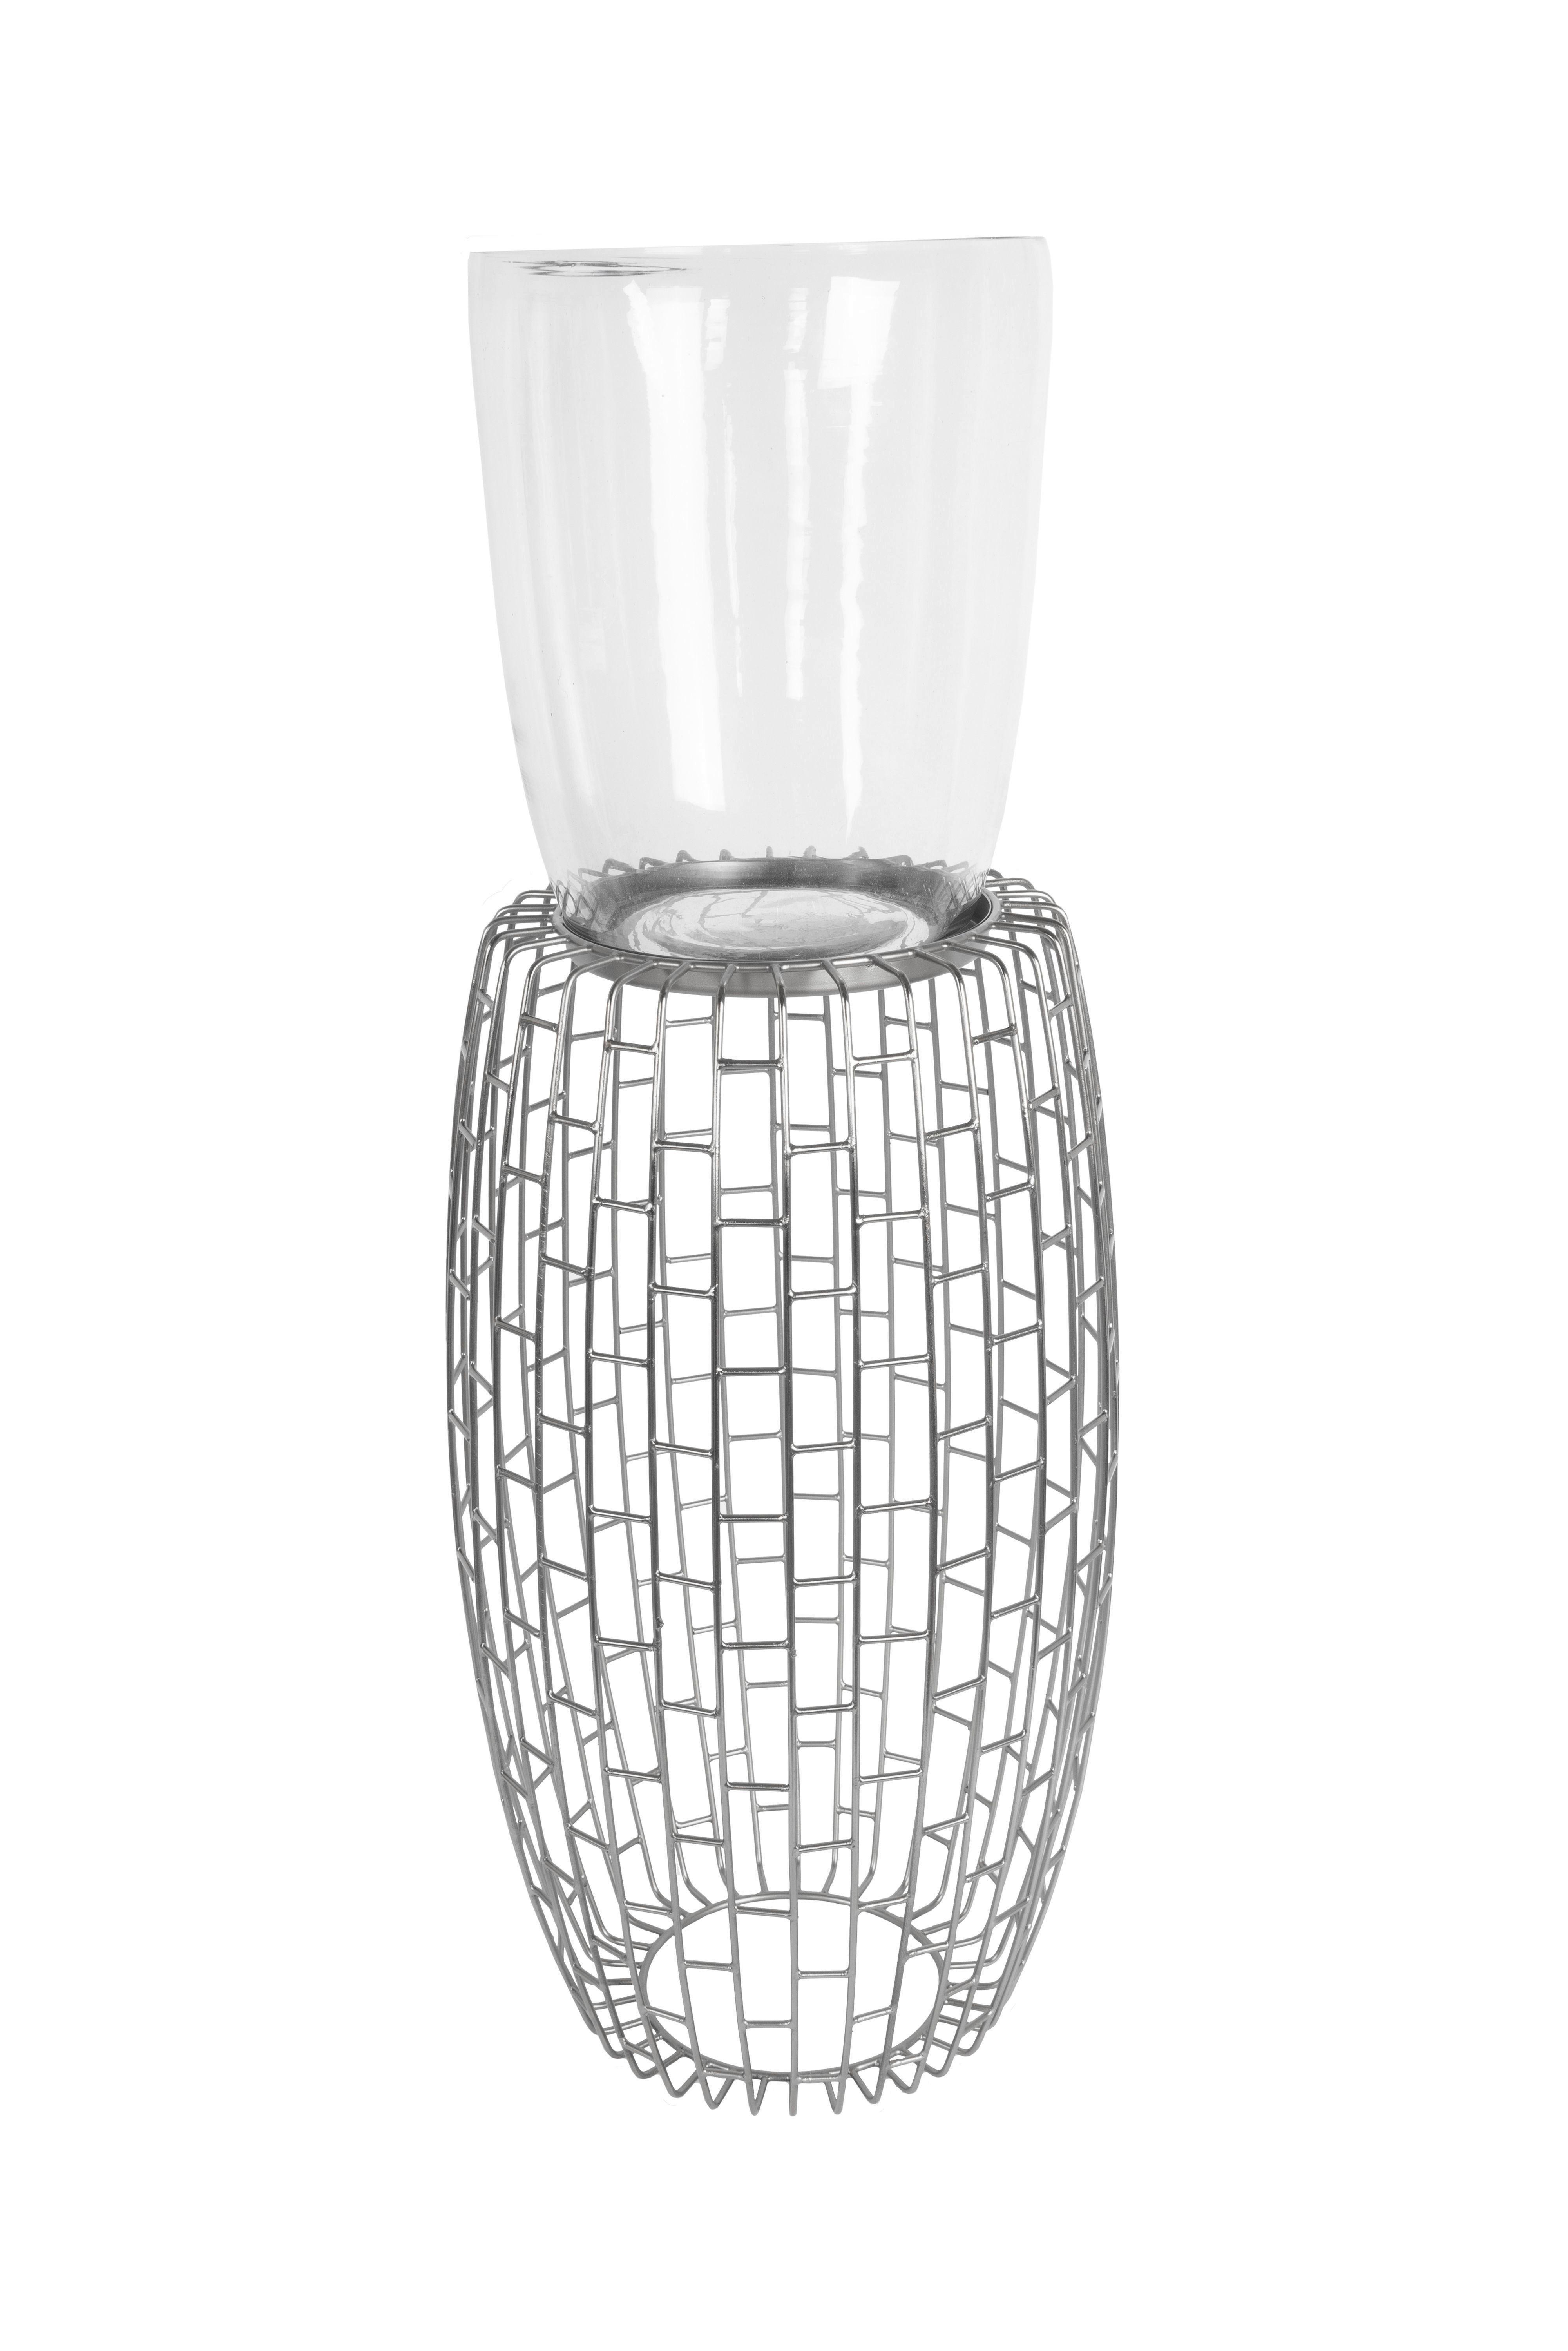 Windlicht Malibu Eisen/Glas Silberfarben H: 73 cm - Silberfarben, Design, Glas/Metall (28/73/28cm)